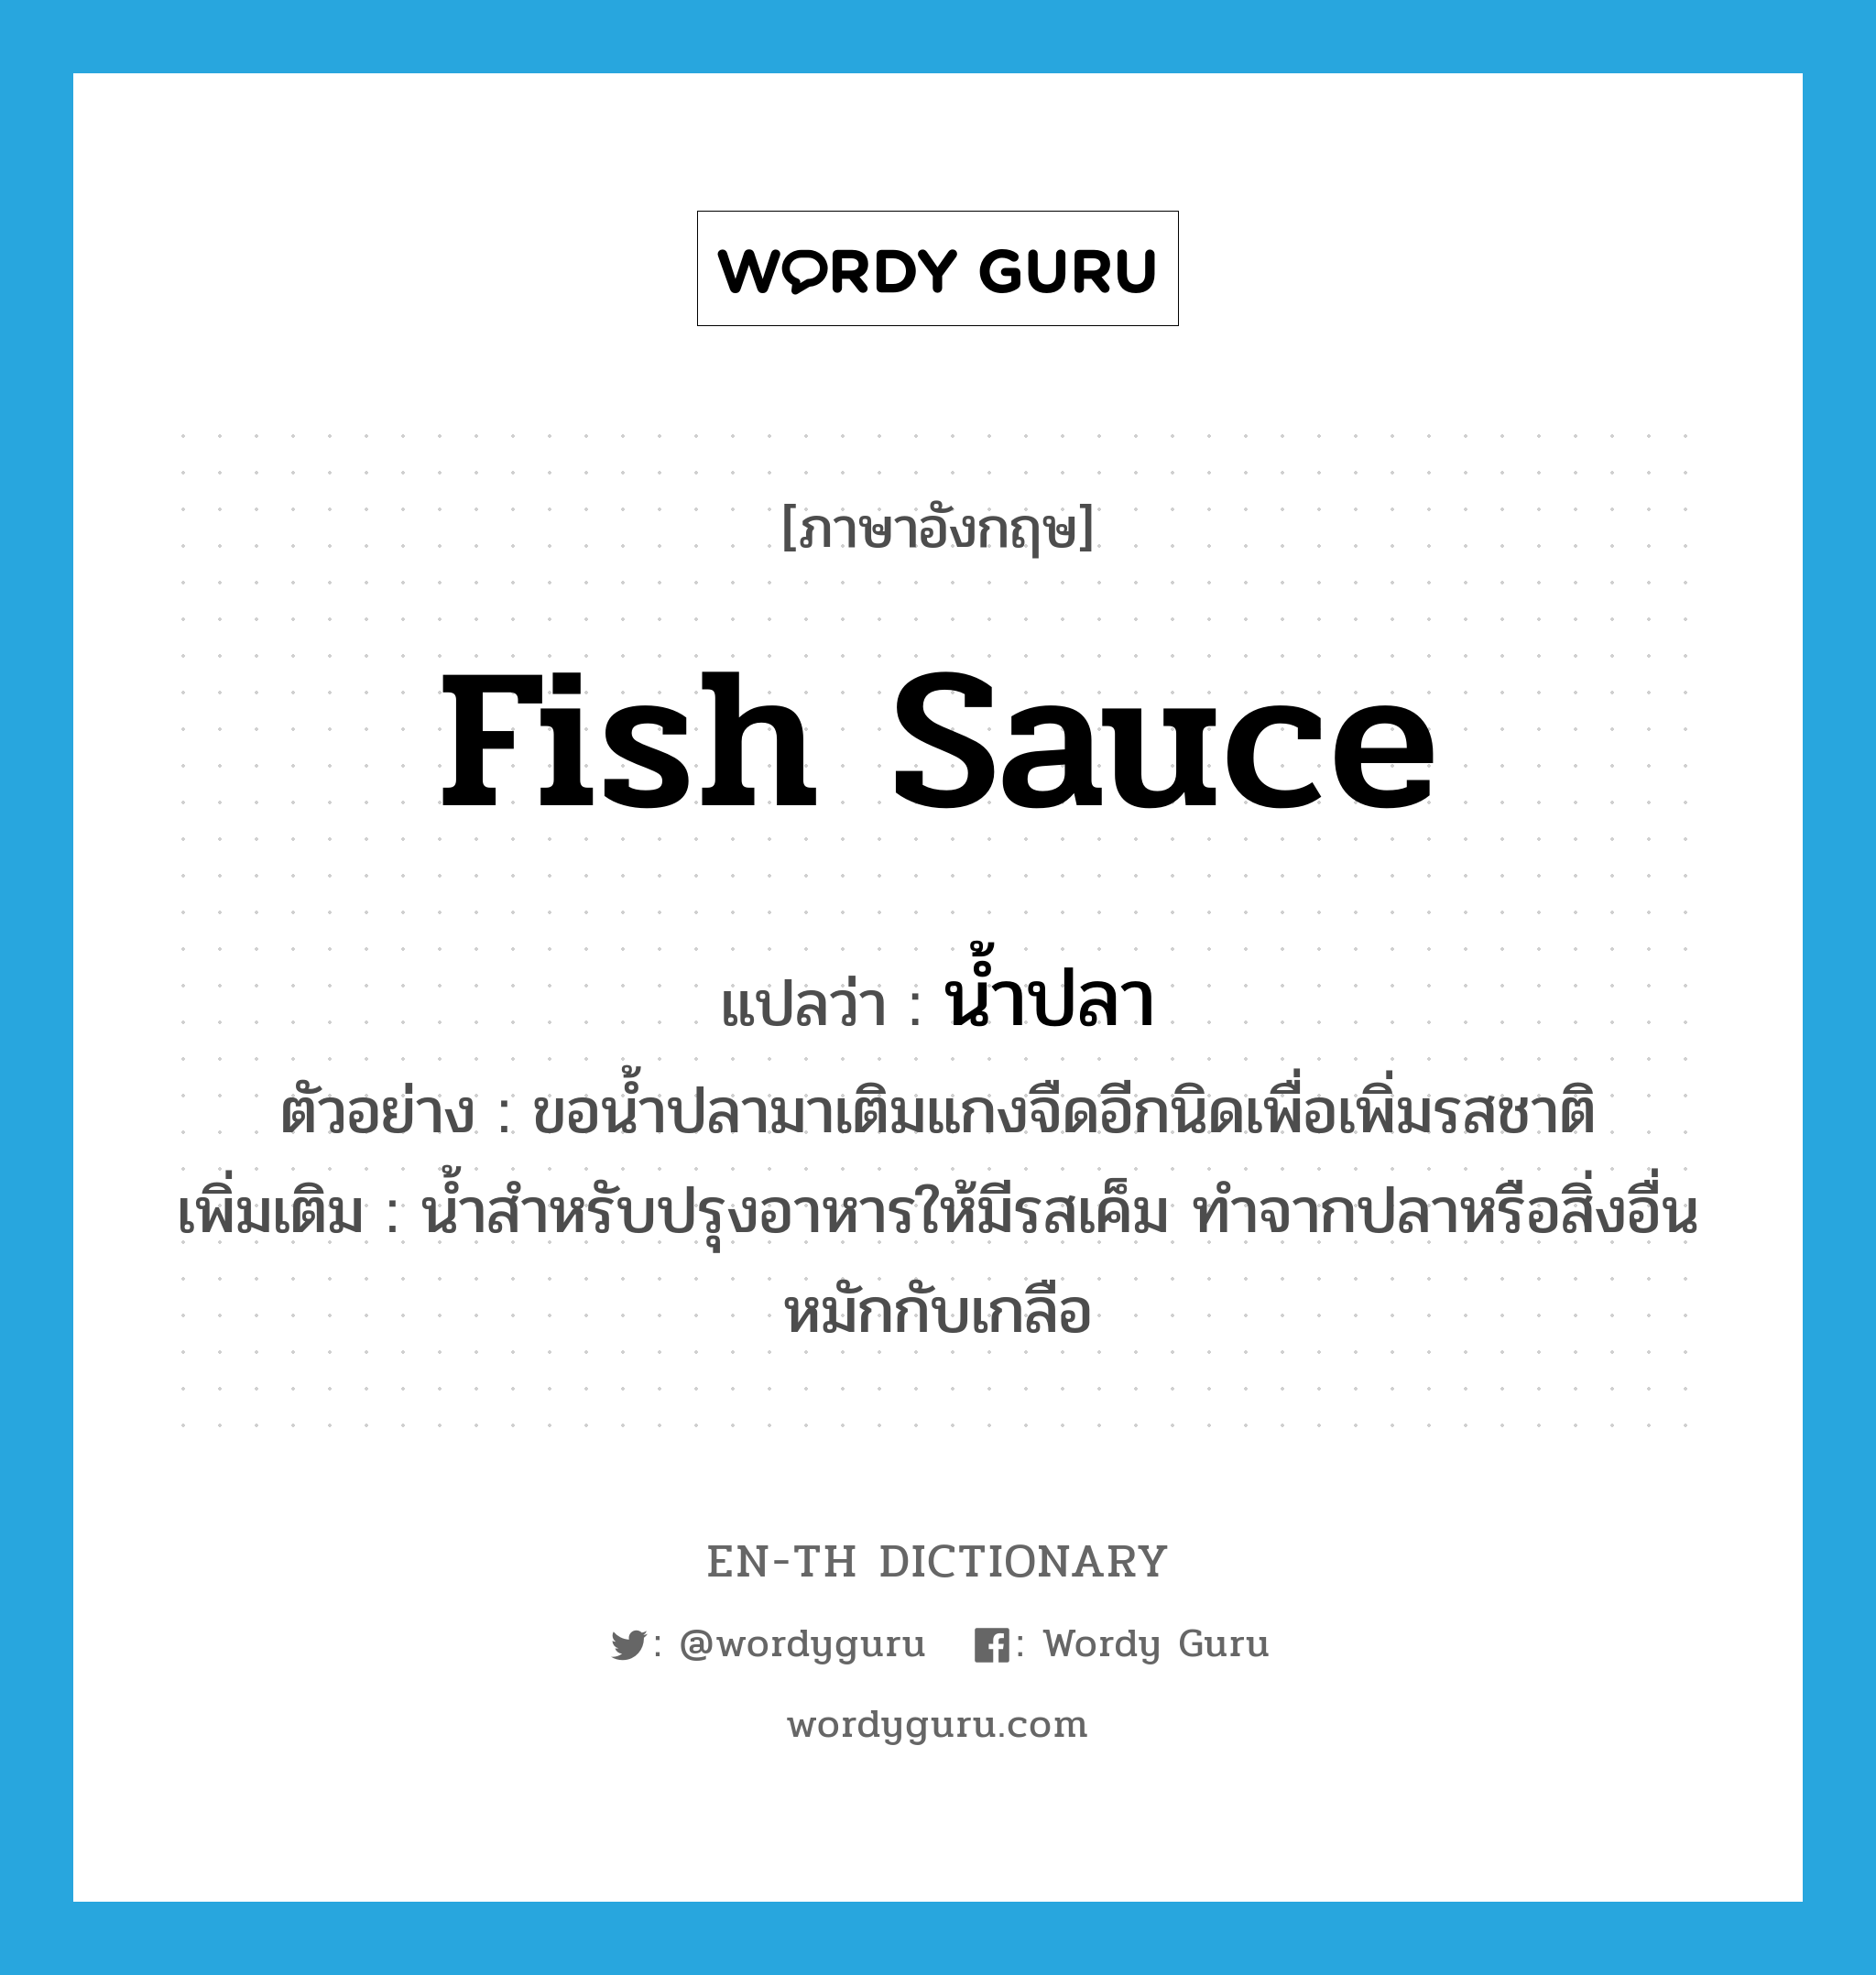 fish sauce แปลว่า?, คำศัพท์ภาษาอังกฤษ fish sauce แปลว่า น้ำปลา ประเภท N ตัวอย่าง ขอน้ำปลามาเติมแกงจืดอีกนิดเพื่อเพิ่มรสชาติ เพิ่มเติม น้ำสำหรับปรุงอาหารให้มีรสเค็ม ทำจากปลาหรือสิ่งอื่นหมักกับเกลือ หมวด N